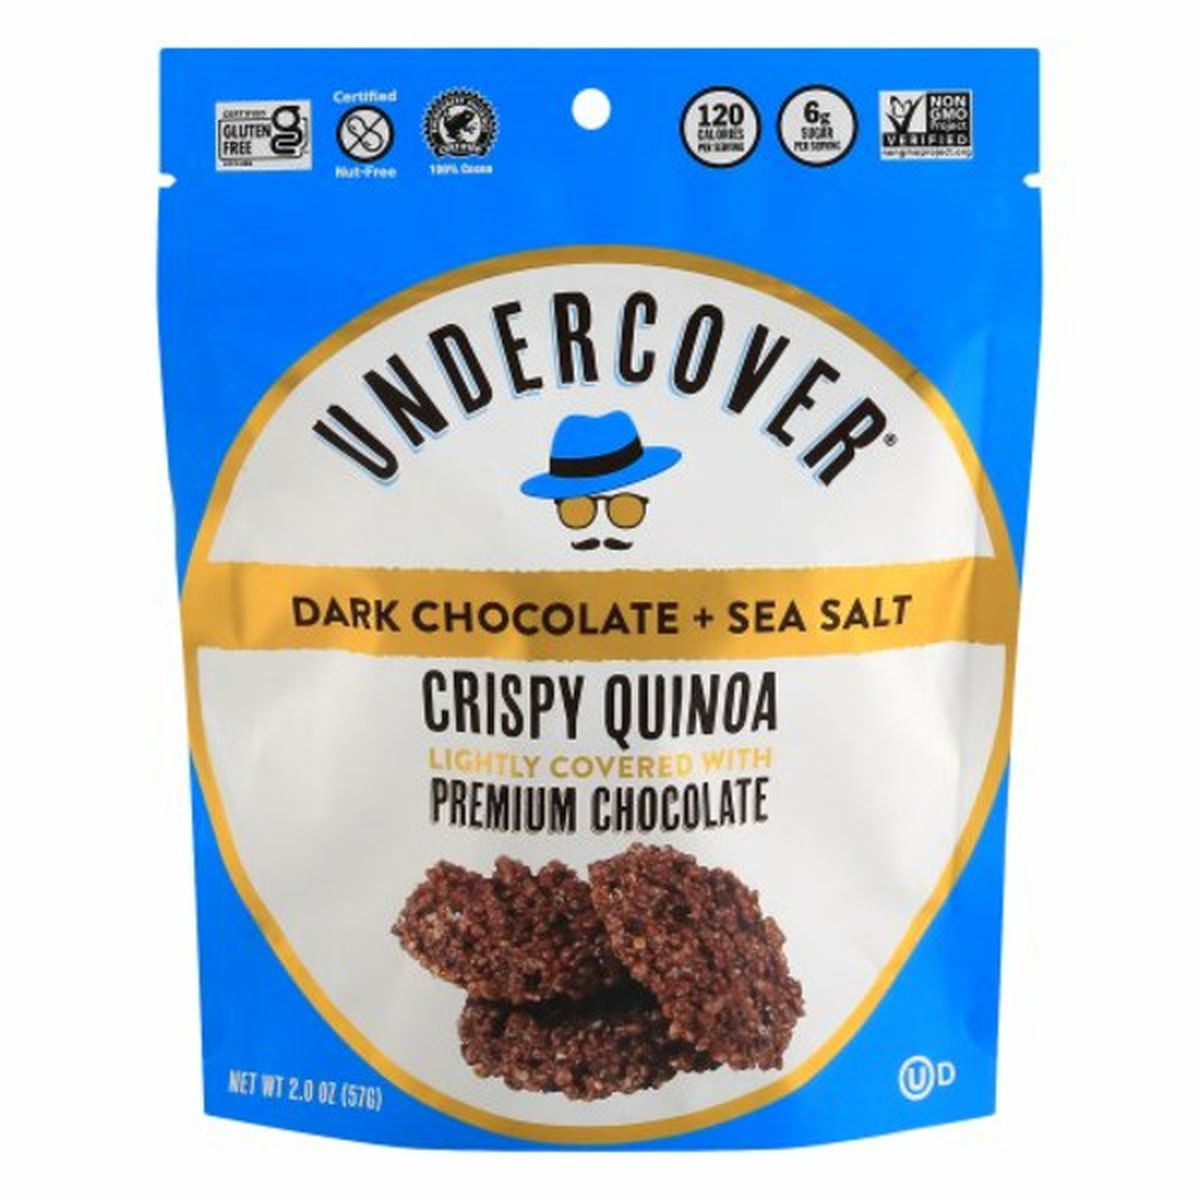 Calories in Undercover Crispy Quinoa, Dark Chocolate + Sea Salt